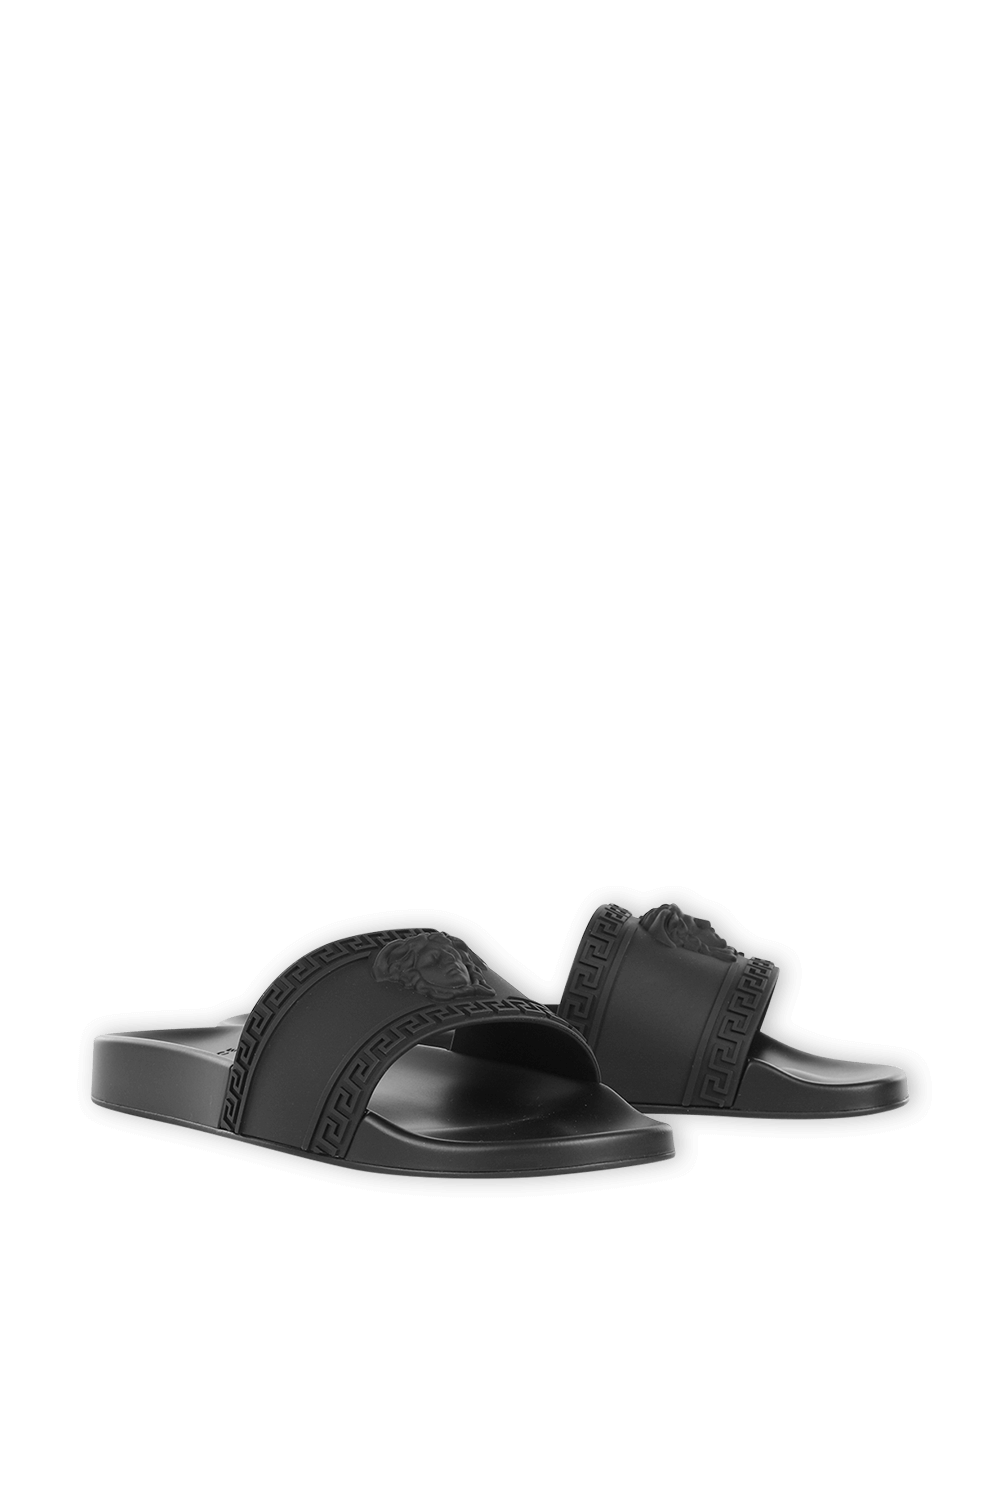 Medusa Slide Sandals in Black VERSACE